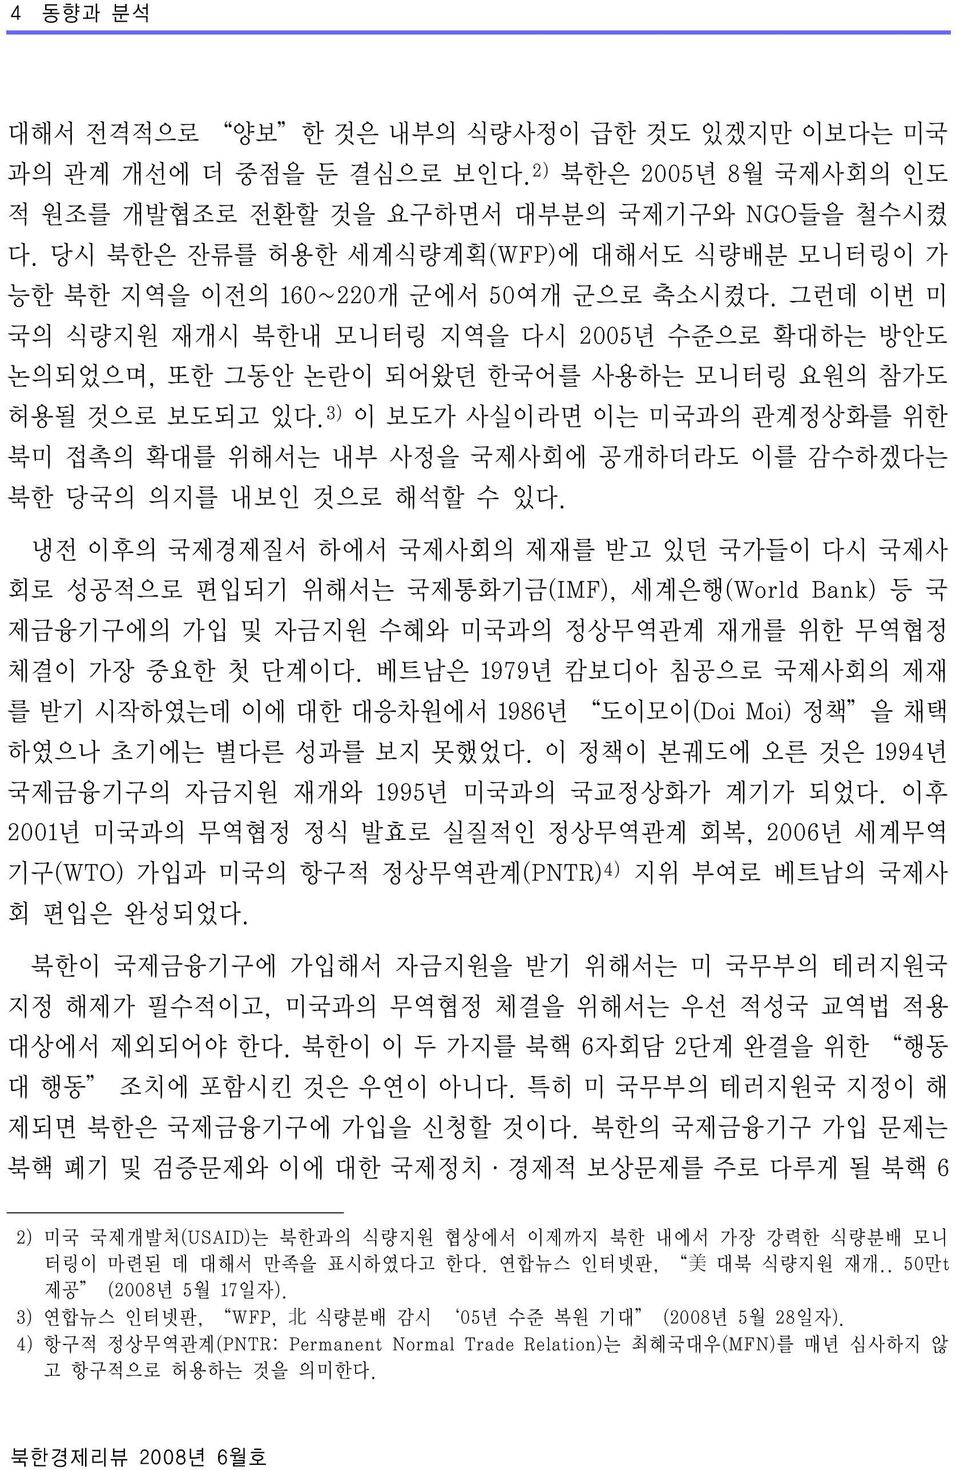 그런데 이번 미 국의 식량지원 재개시 북한내 모니터링 지역을 다시 2005년 수준으로 확대하는 방안도 논의되었으며, 또한 그동안 논란이 되어왔던 한국어를 사용하는 모니터링 요원의 참가도 허용될 것으로 보도되고 있다.